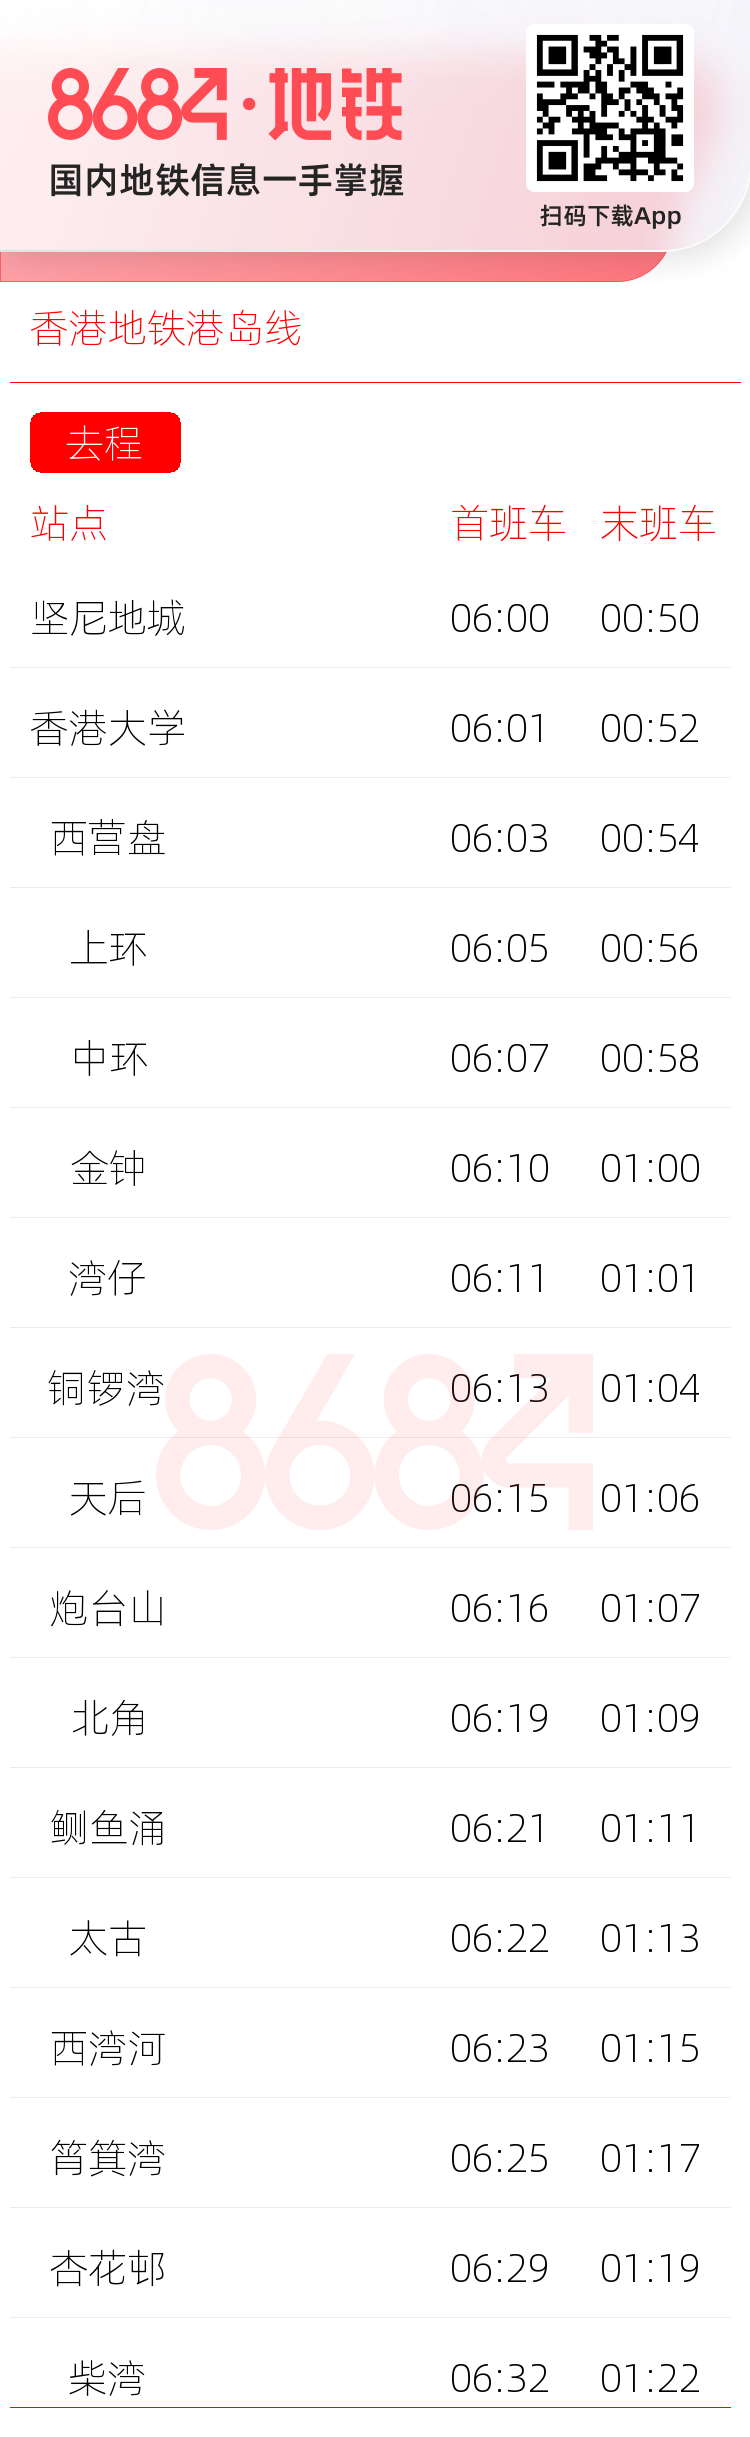 香港地铁港岛线运营时间表